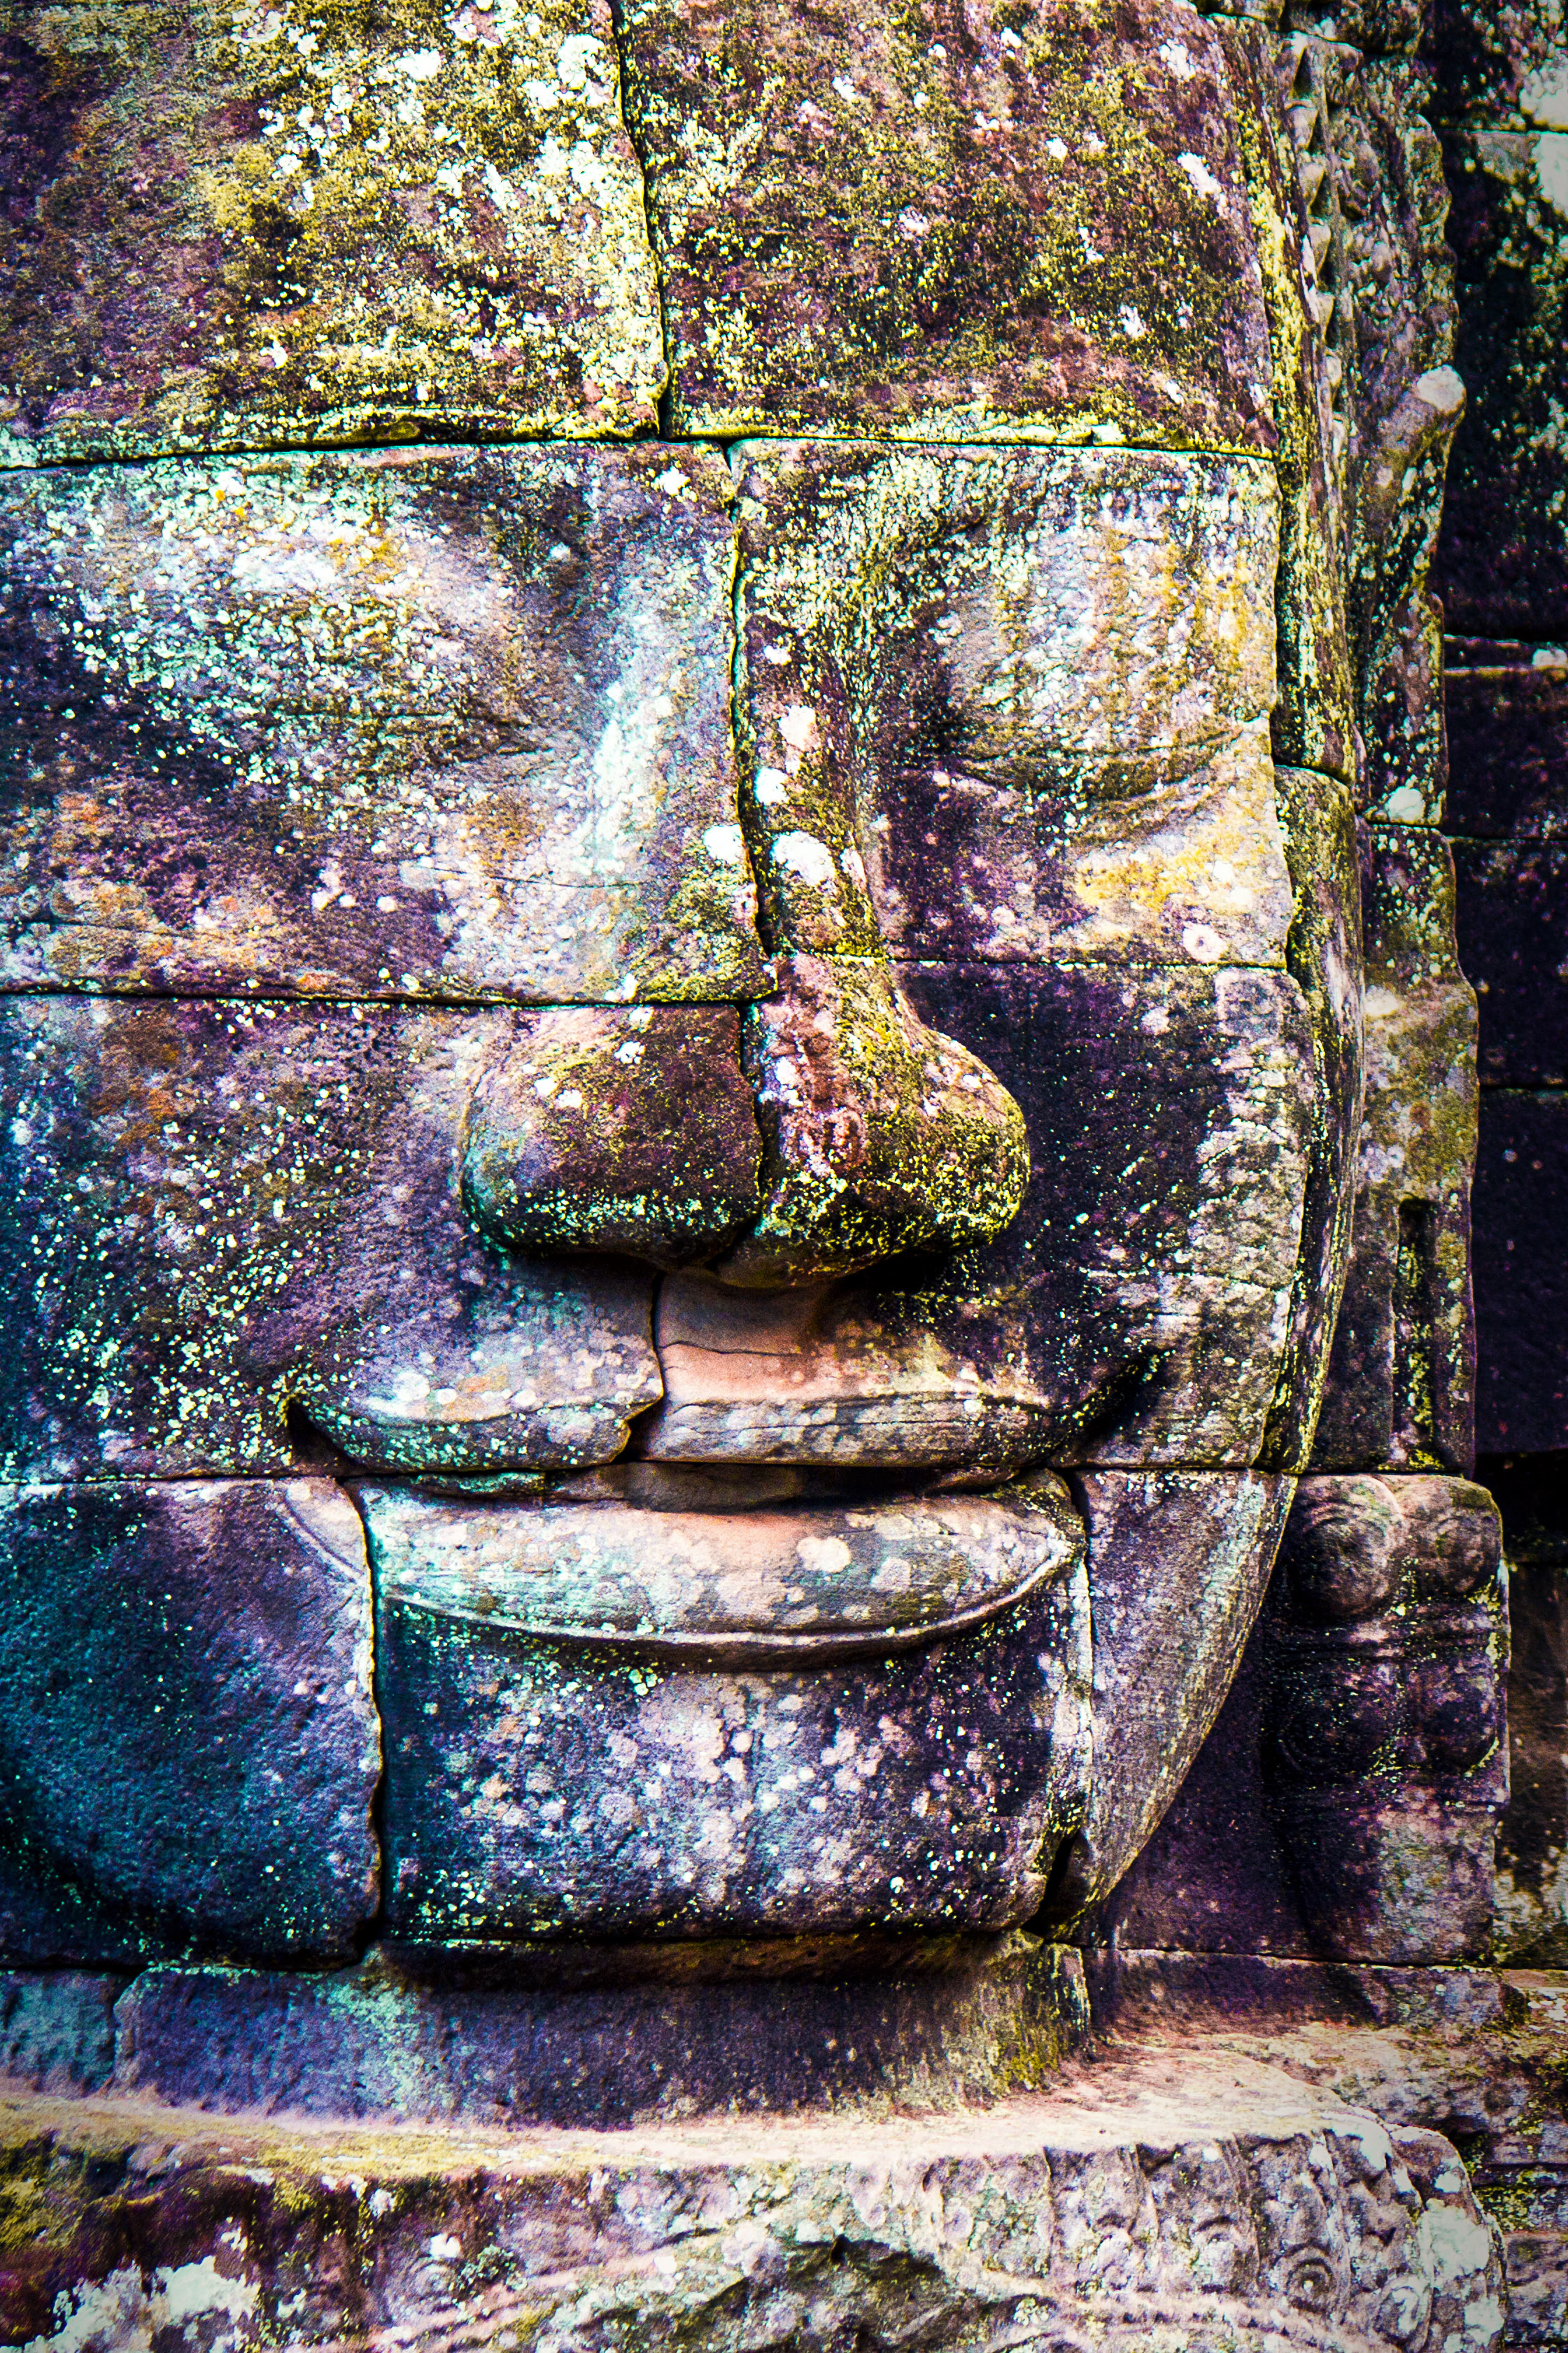 Colorful Cambodia (at Angkor Thom)